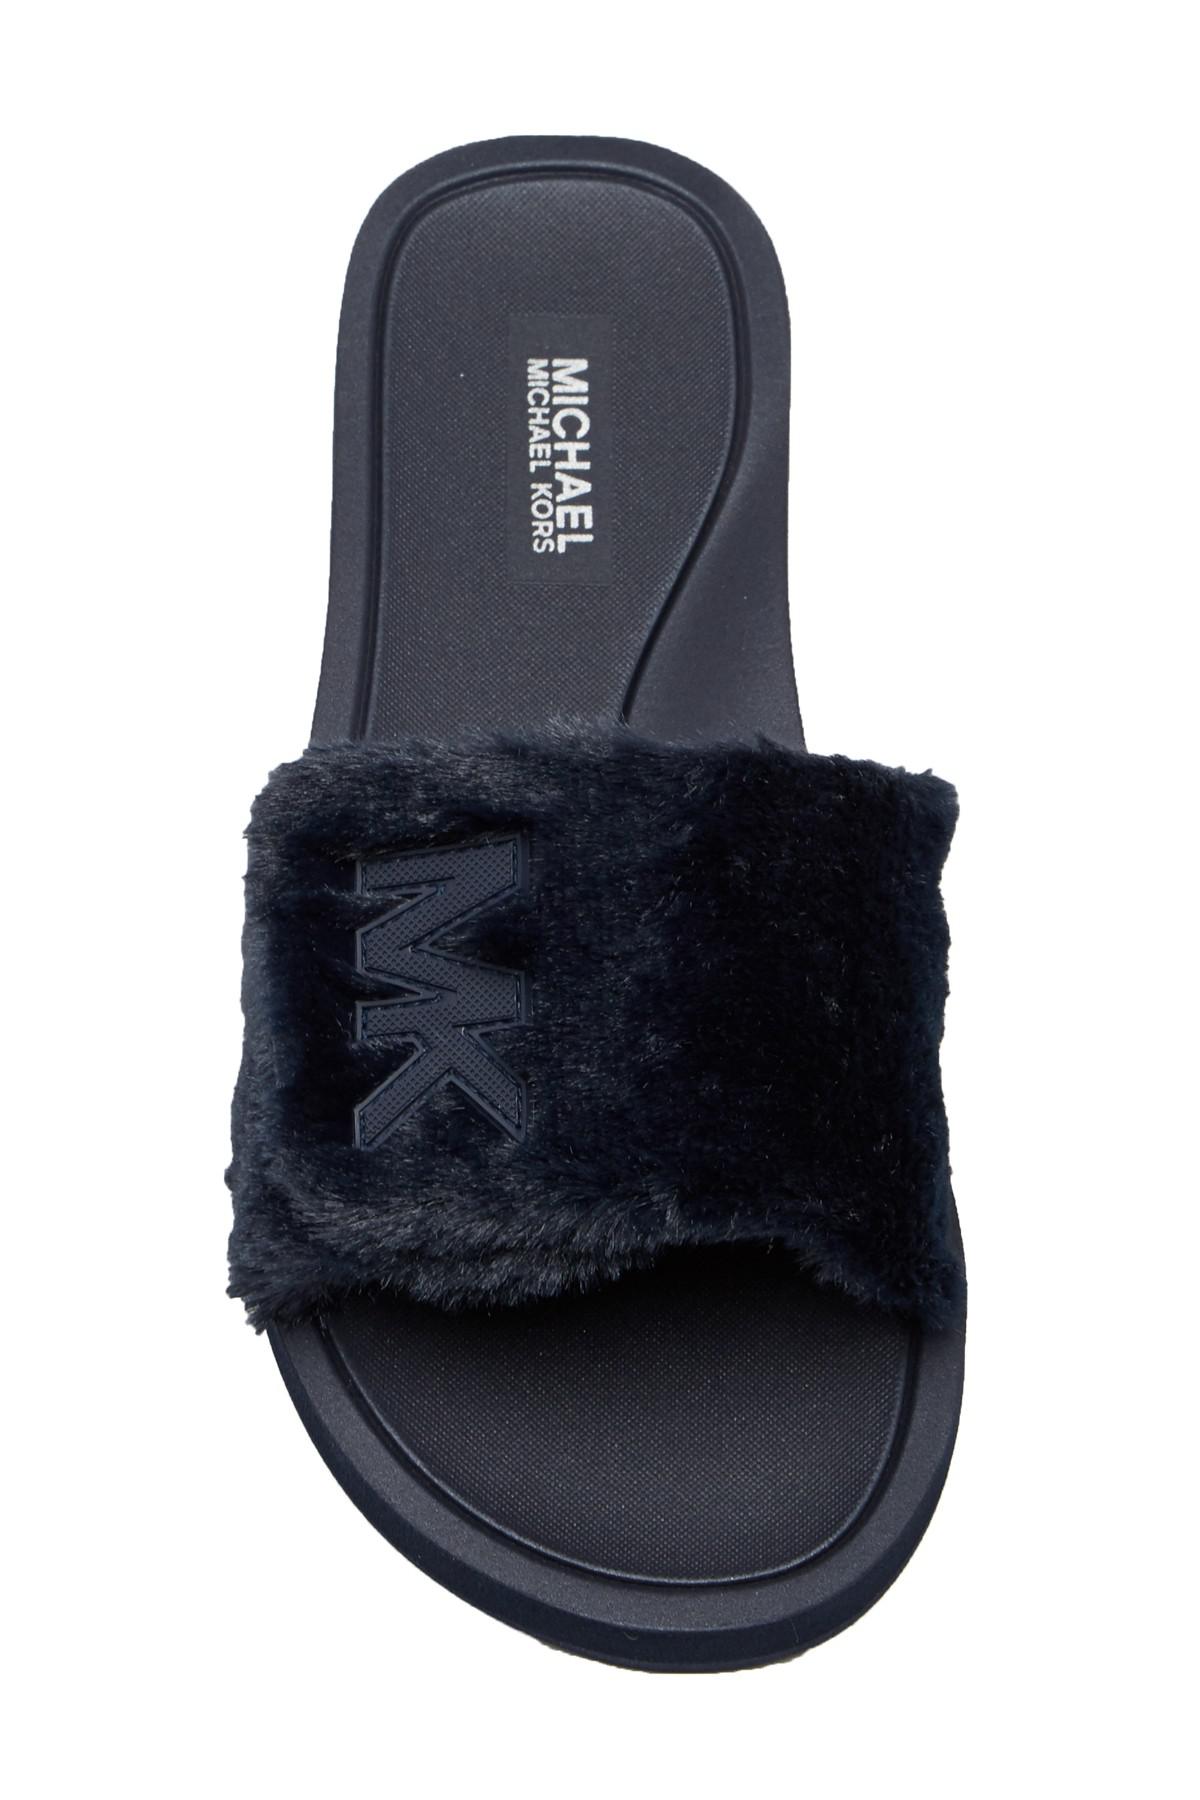 michael kors faux fur slide sandals